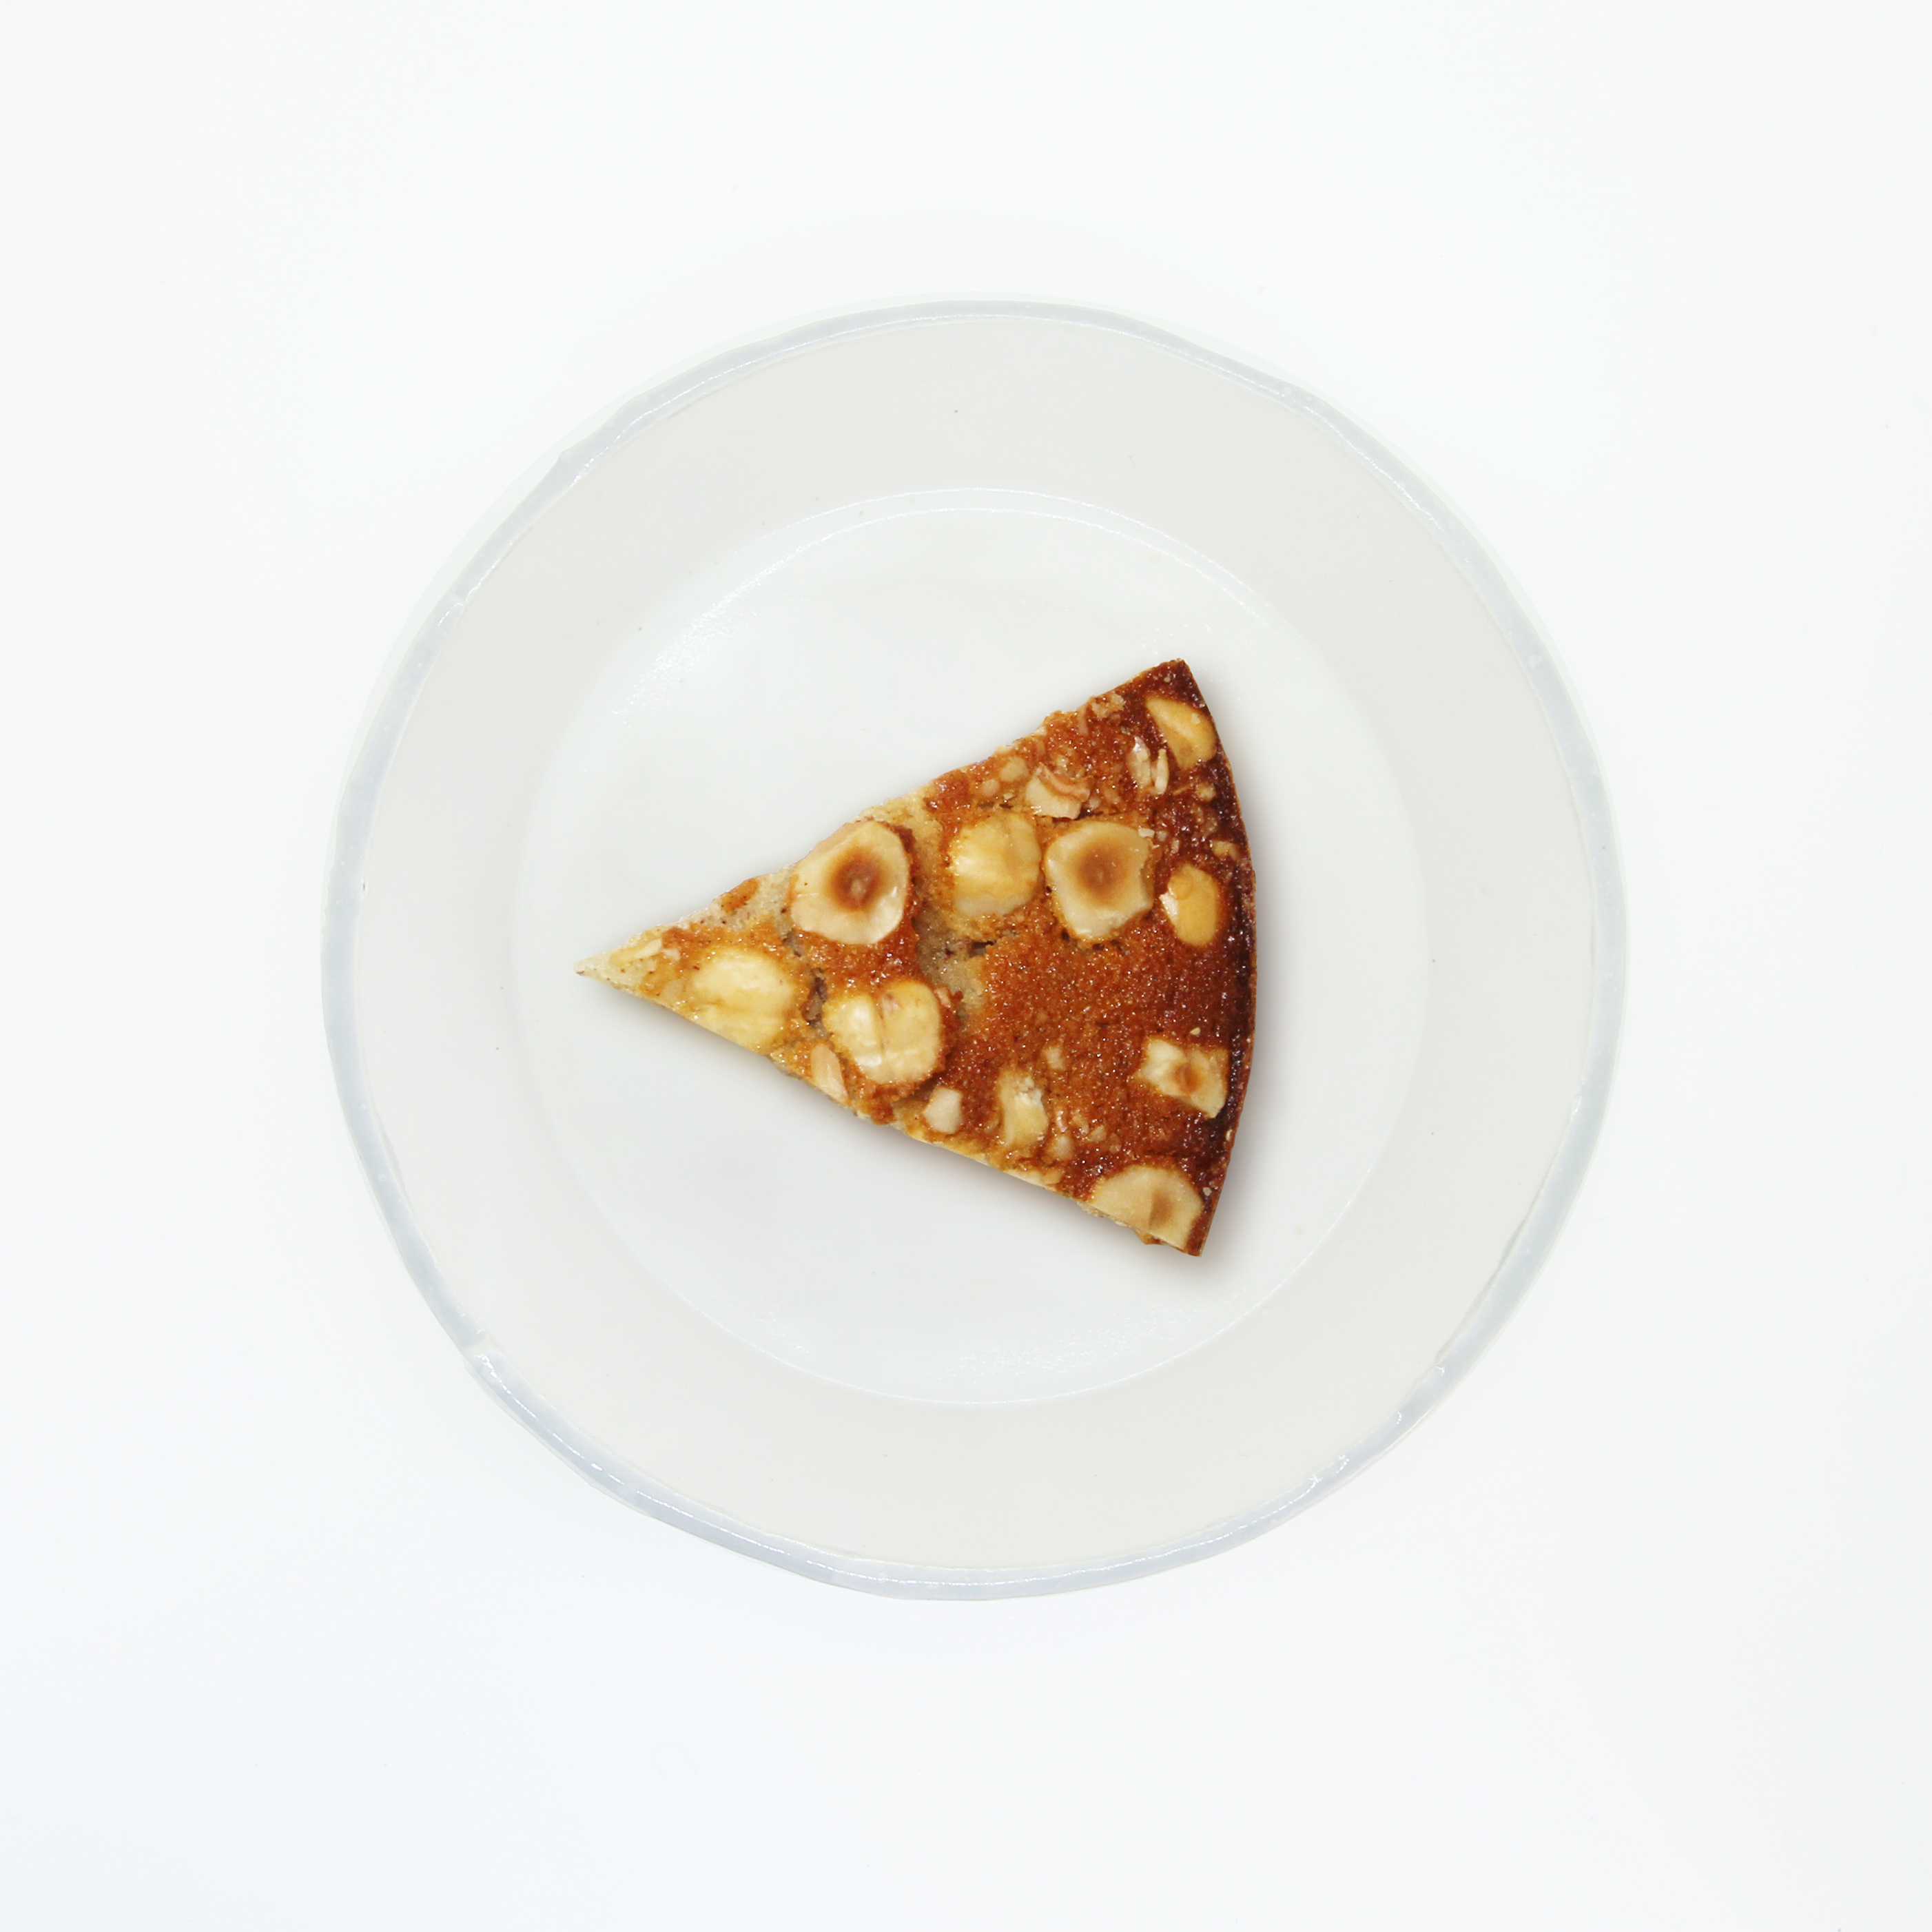 おうちで作ろう お菓子キット ヘーゼルナッツのフィナンシェ 直径12cmのケーキ焼型付き Chez Mikki